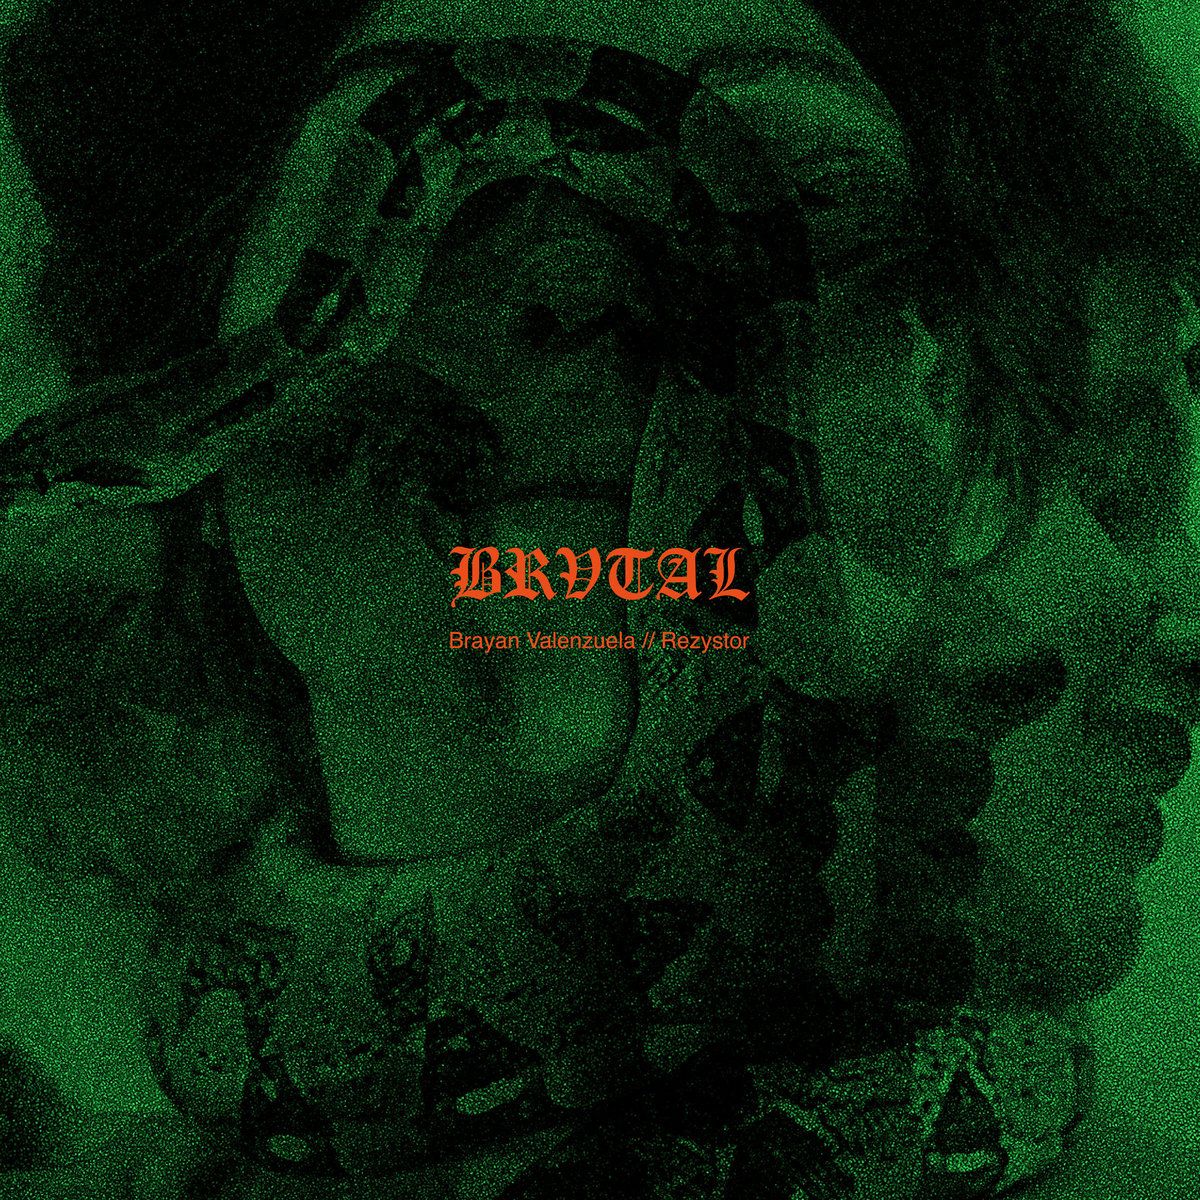 Brayan Valenzuela/Rezystor - Split - 12" EP